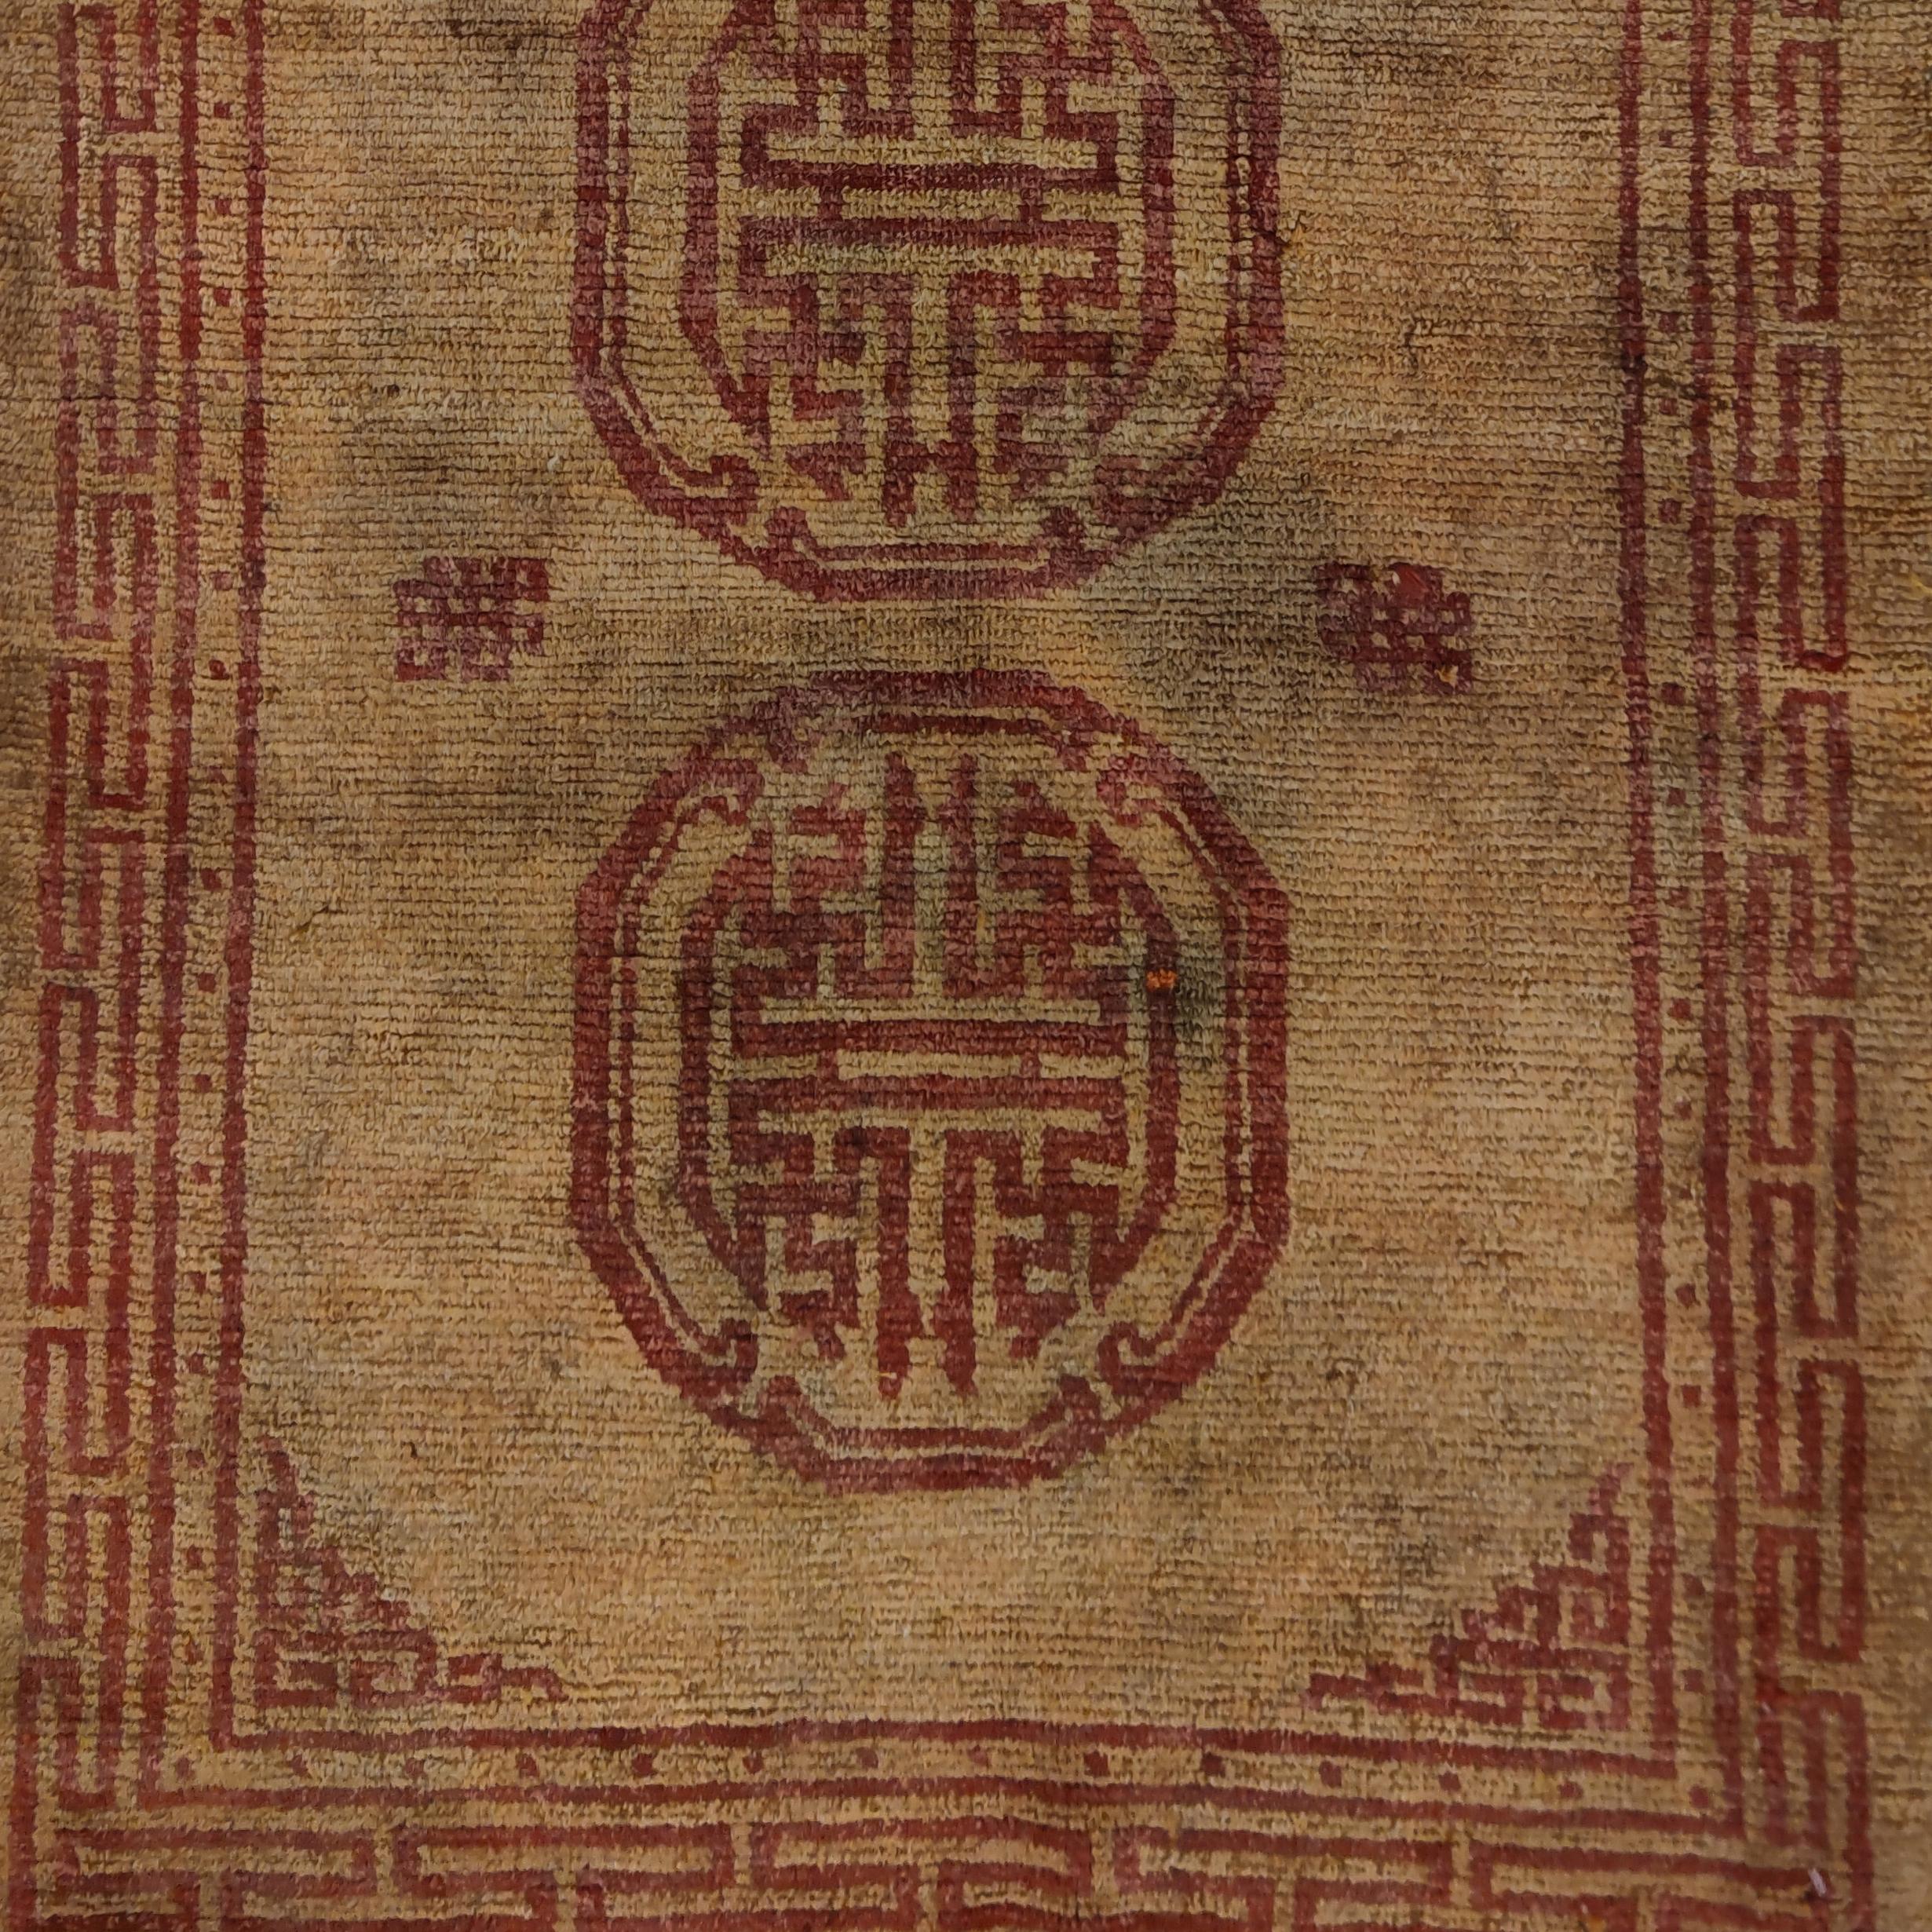 Un tapis tibétain rare et unique, qui se distingue par un fond jaune doux sur lequel se superpose un motif rouge clair composé de trois mandalas, symboles de l'univers. Les tapis dans ces couleurs monastiques étaient utilisés comme tissage de